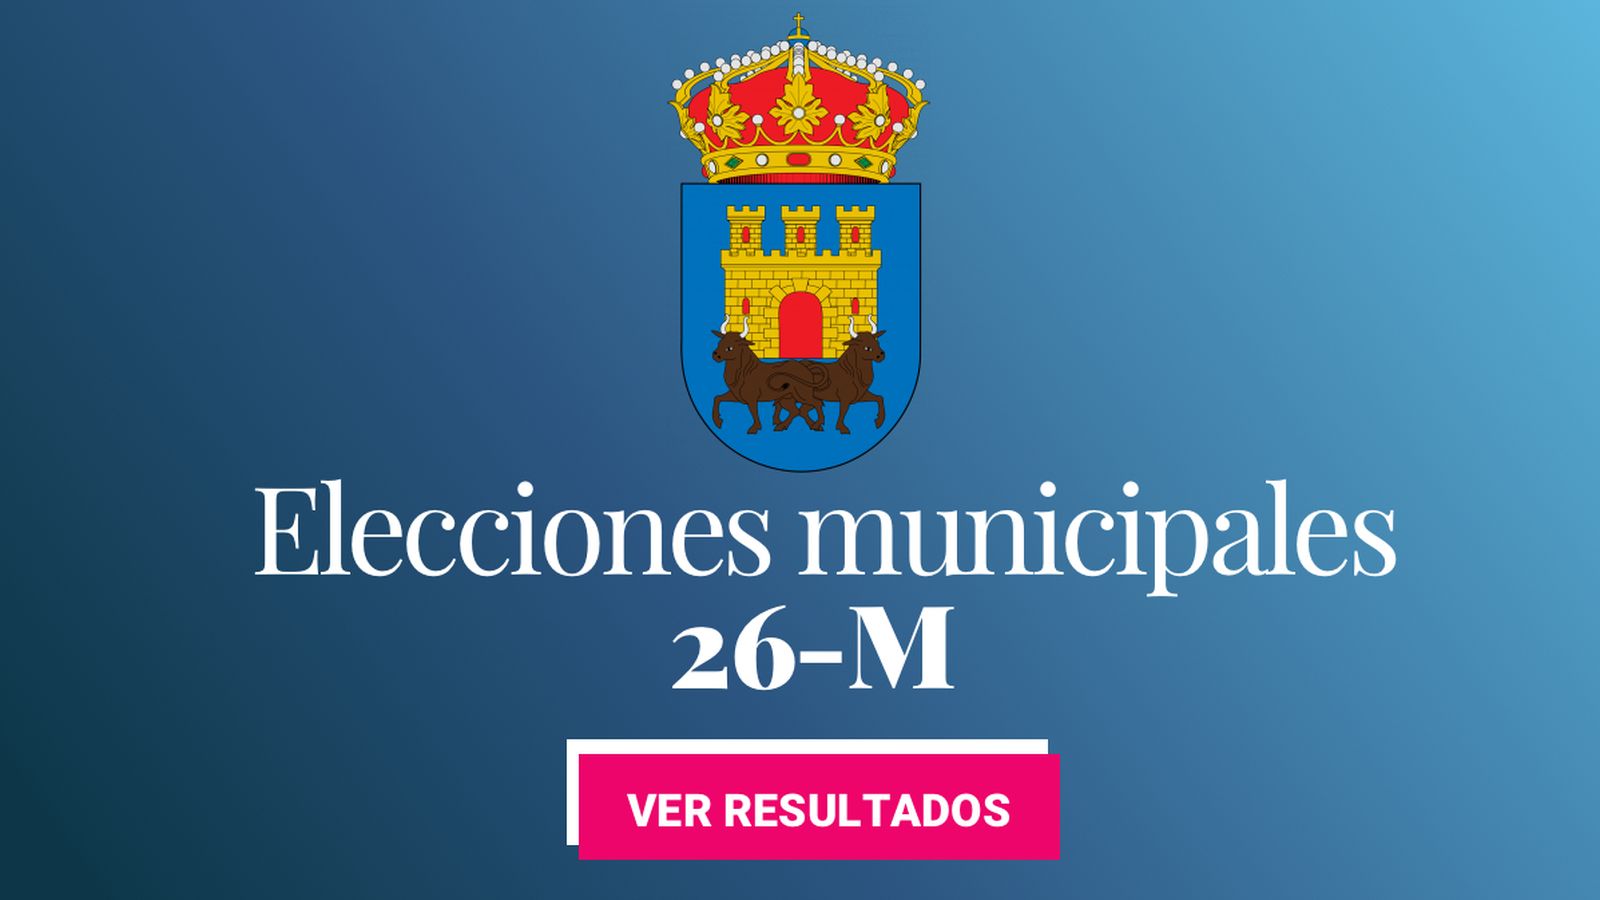 Foto: Elecciones municipales 2019 en Talavera de la Reina. (C.C./EC)